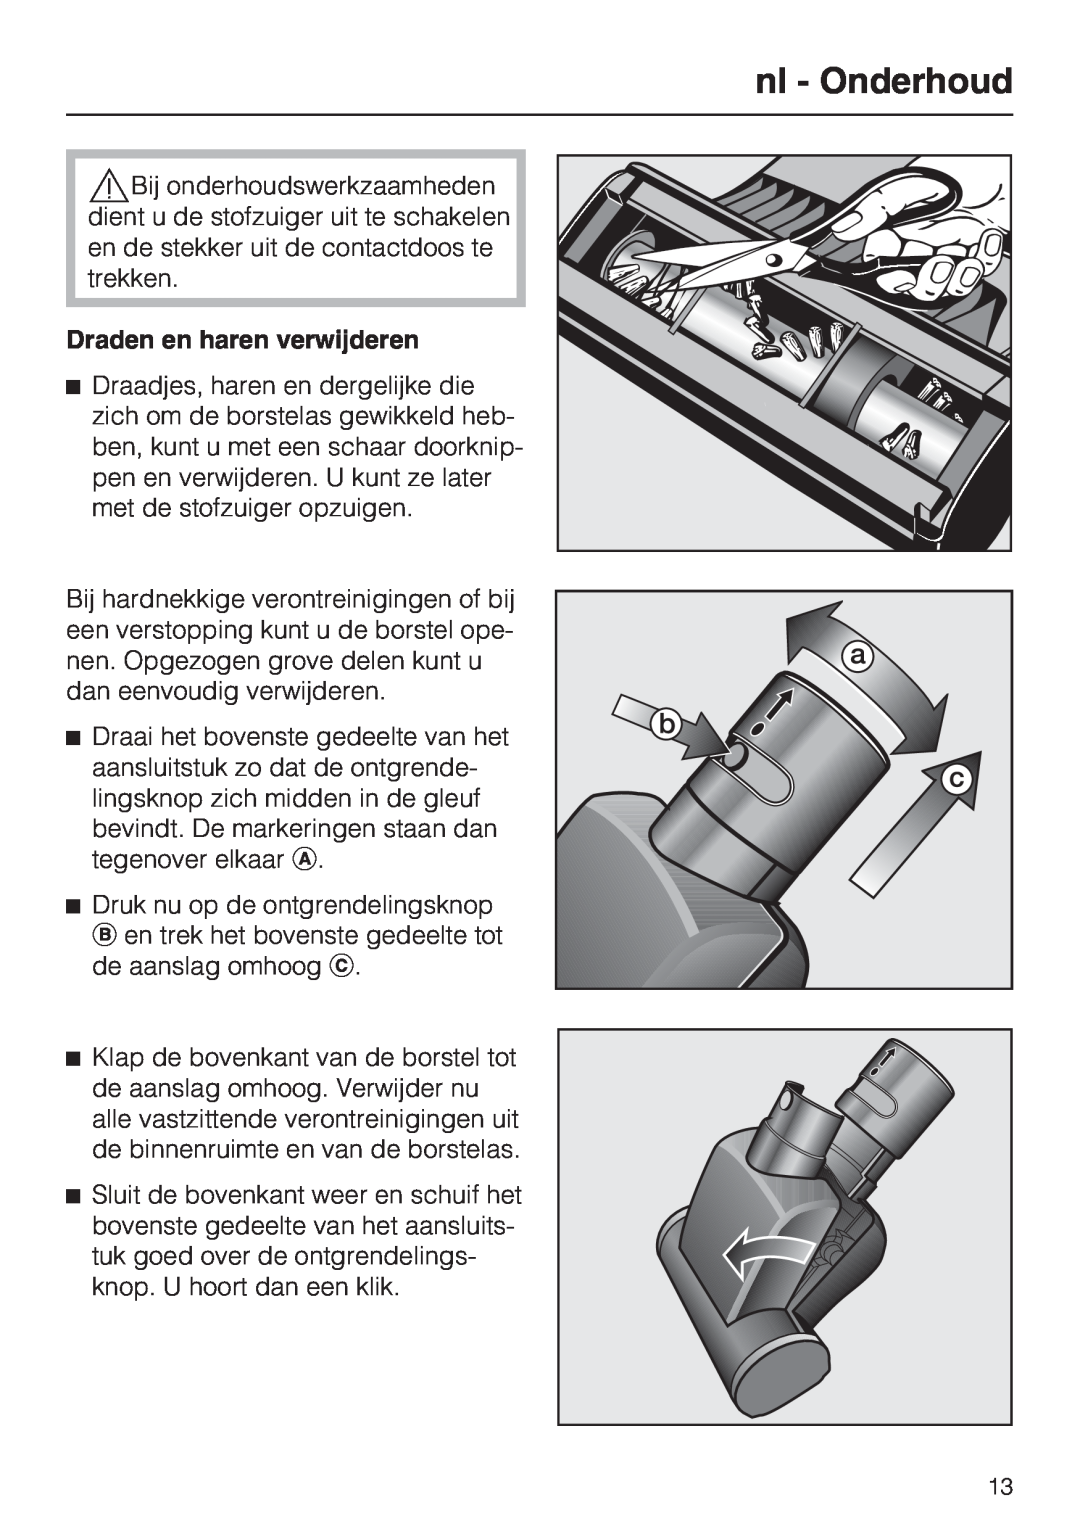 Miele STB 101 manual nl - Onderhoud, Draden en haren verwijderen 